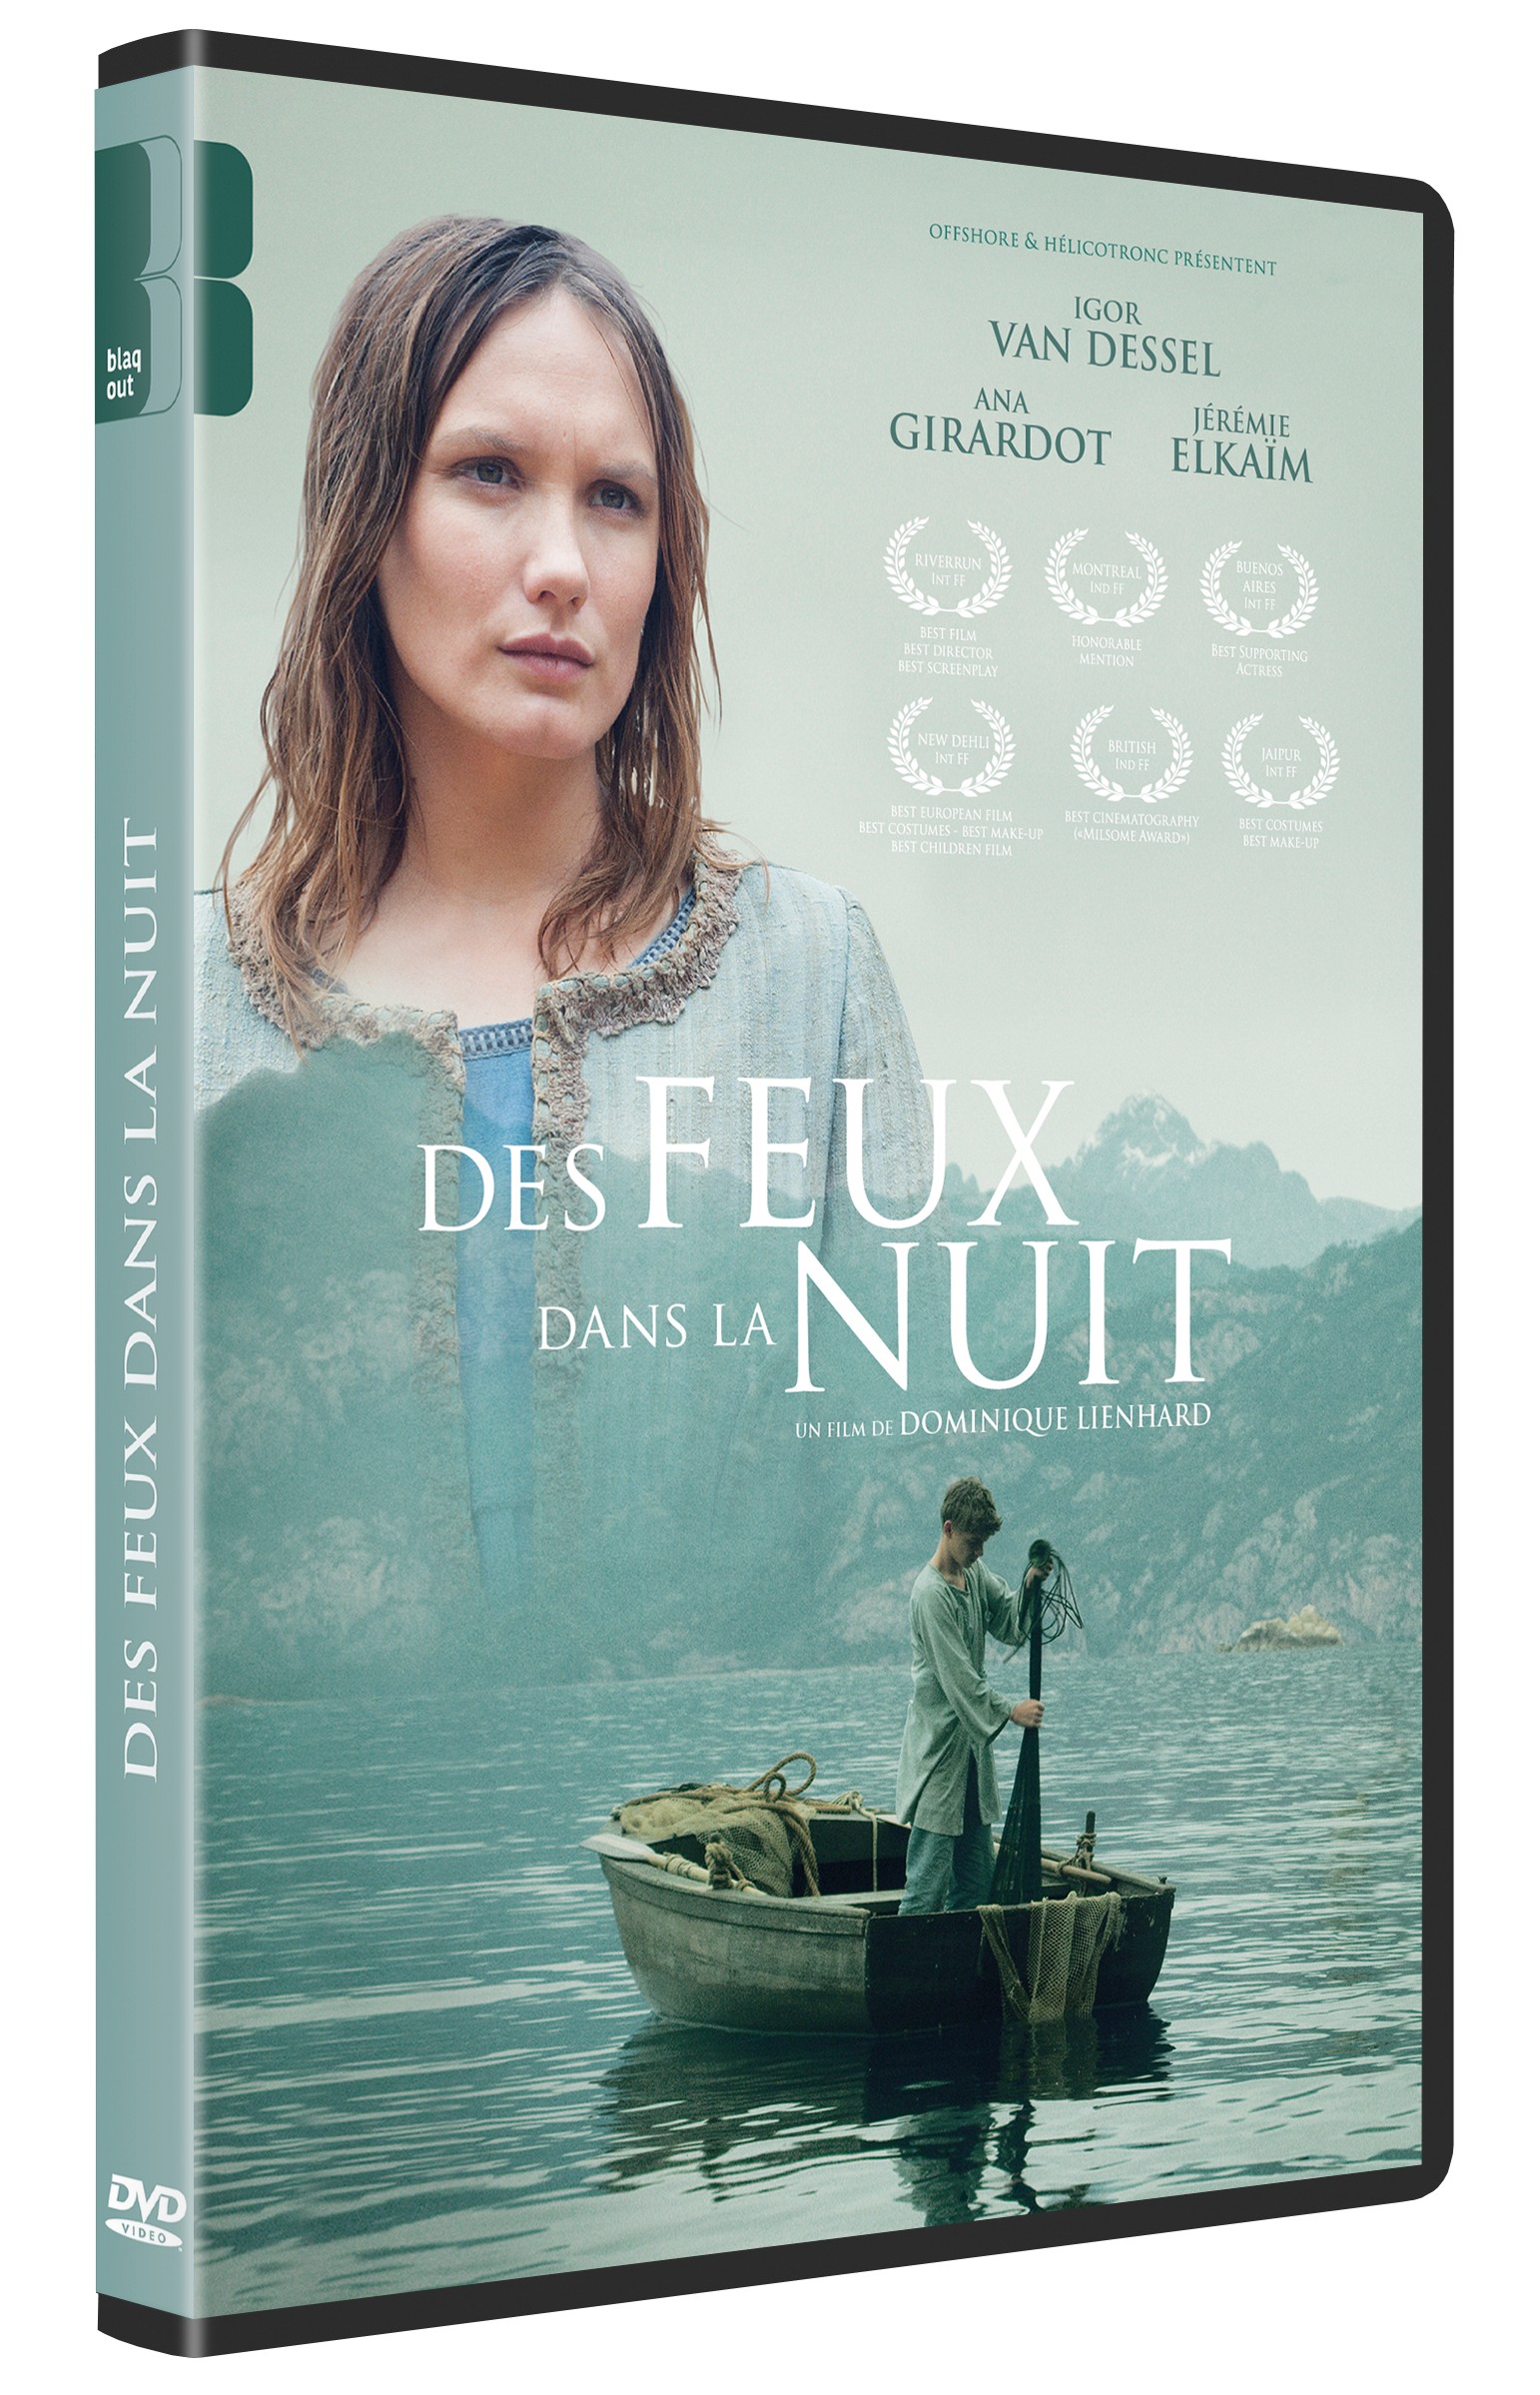 DES FEUX DANS LA NUIT - DVD